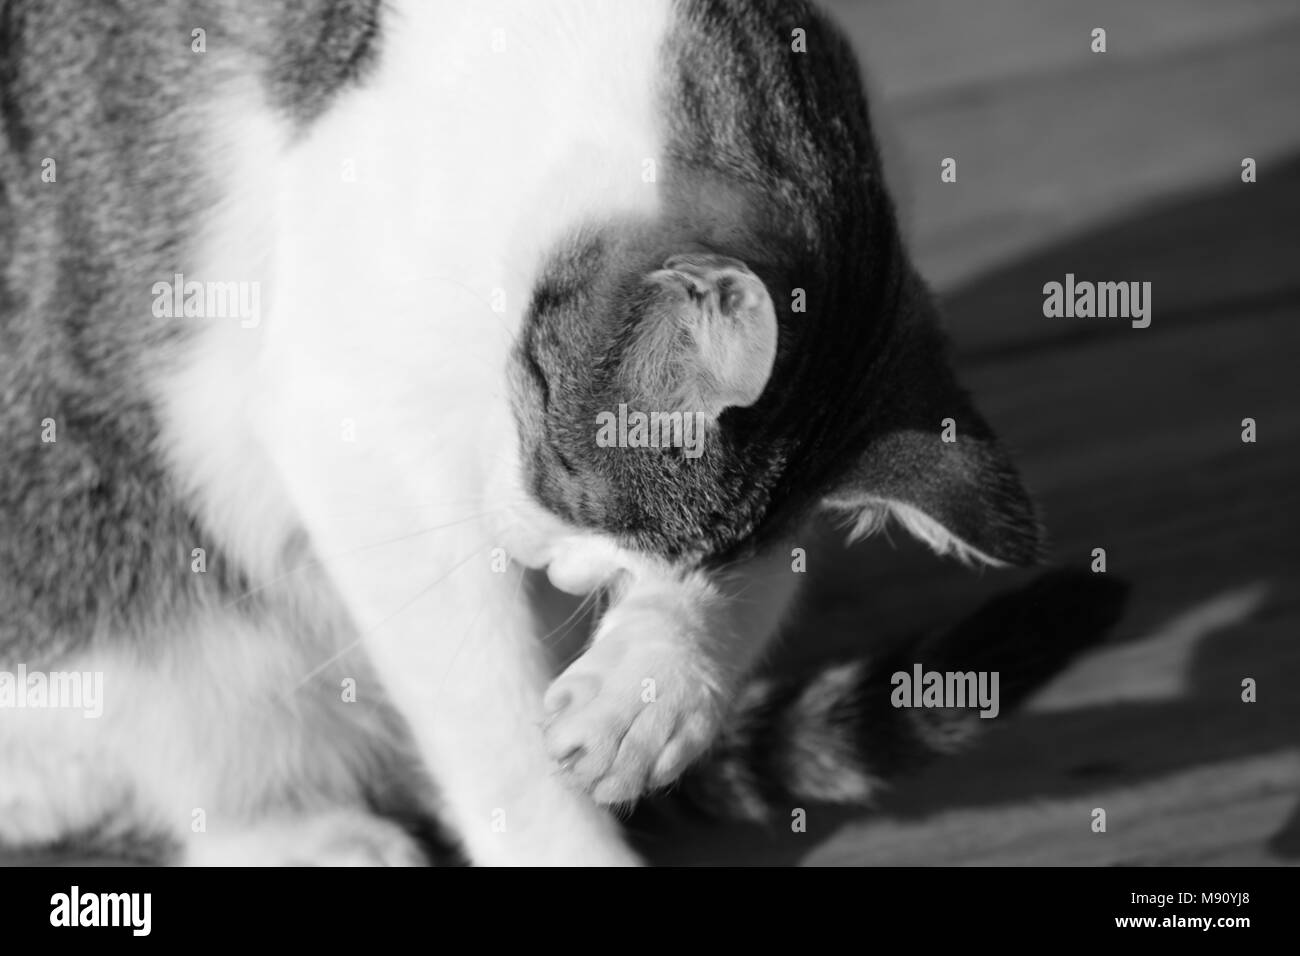 tabby cats life monochrome Stock Photo